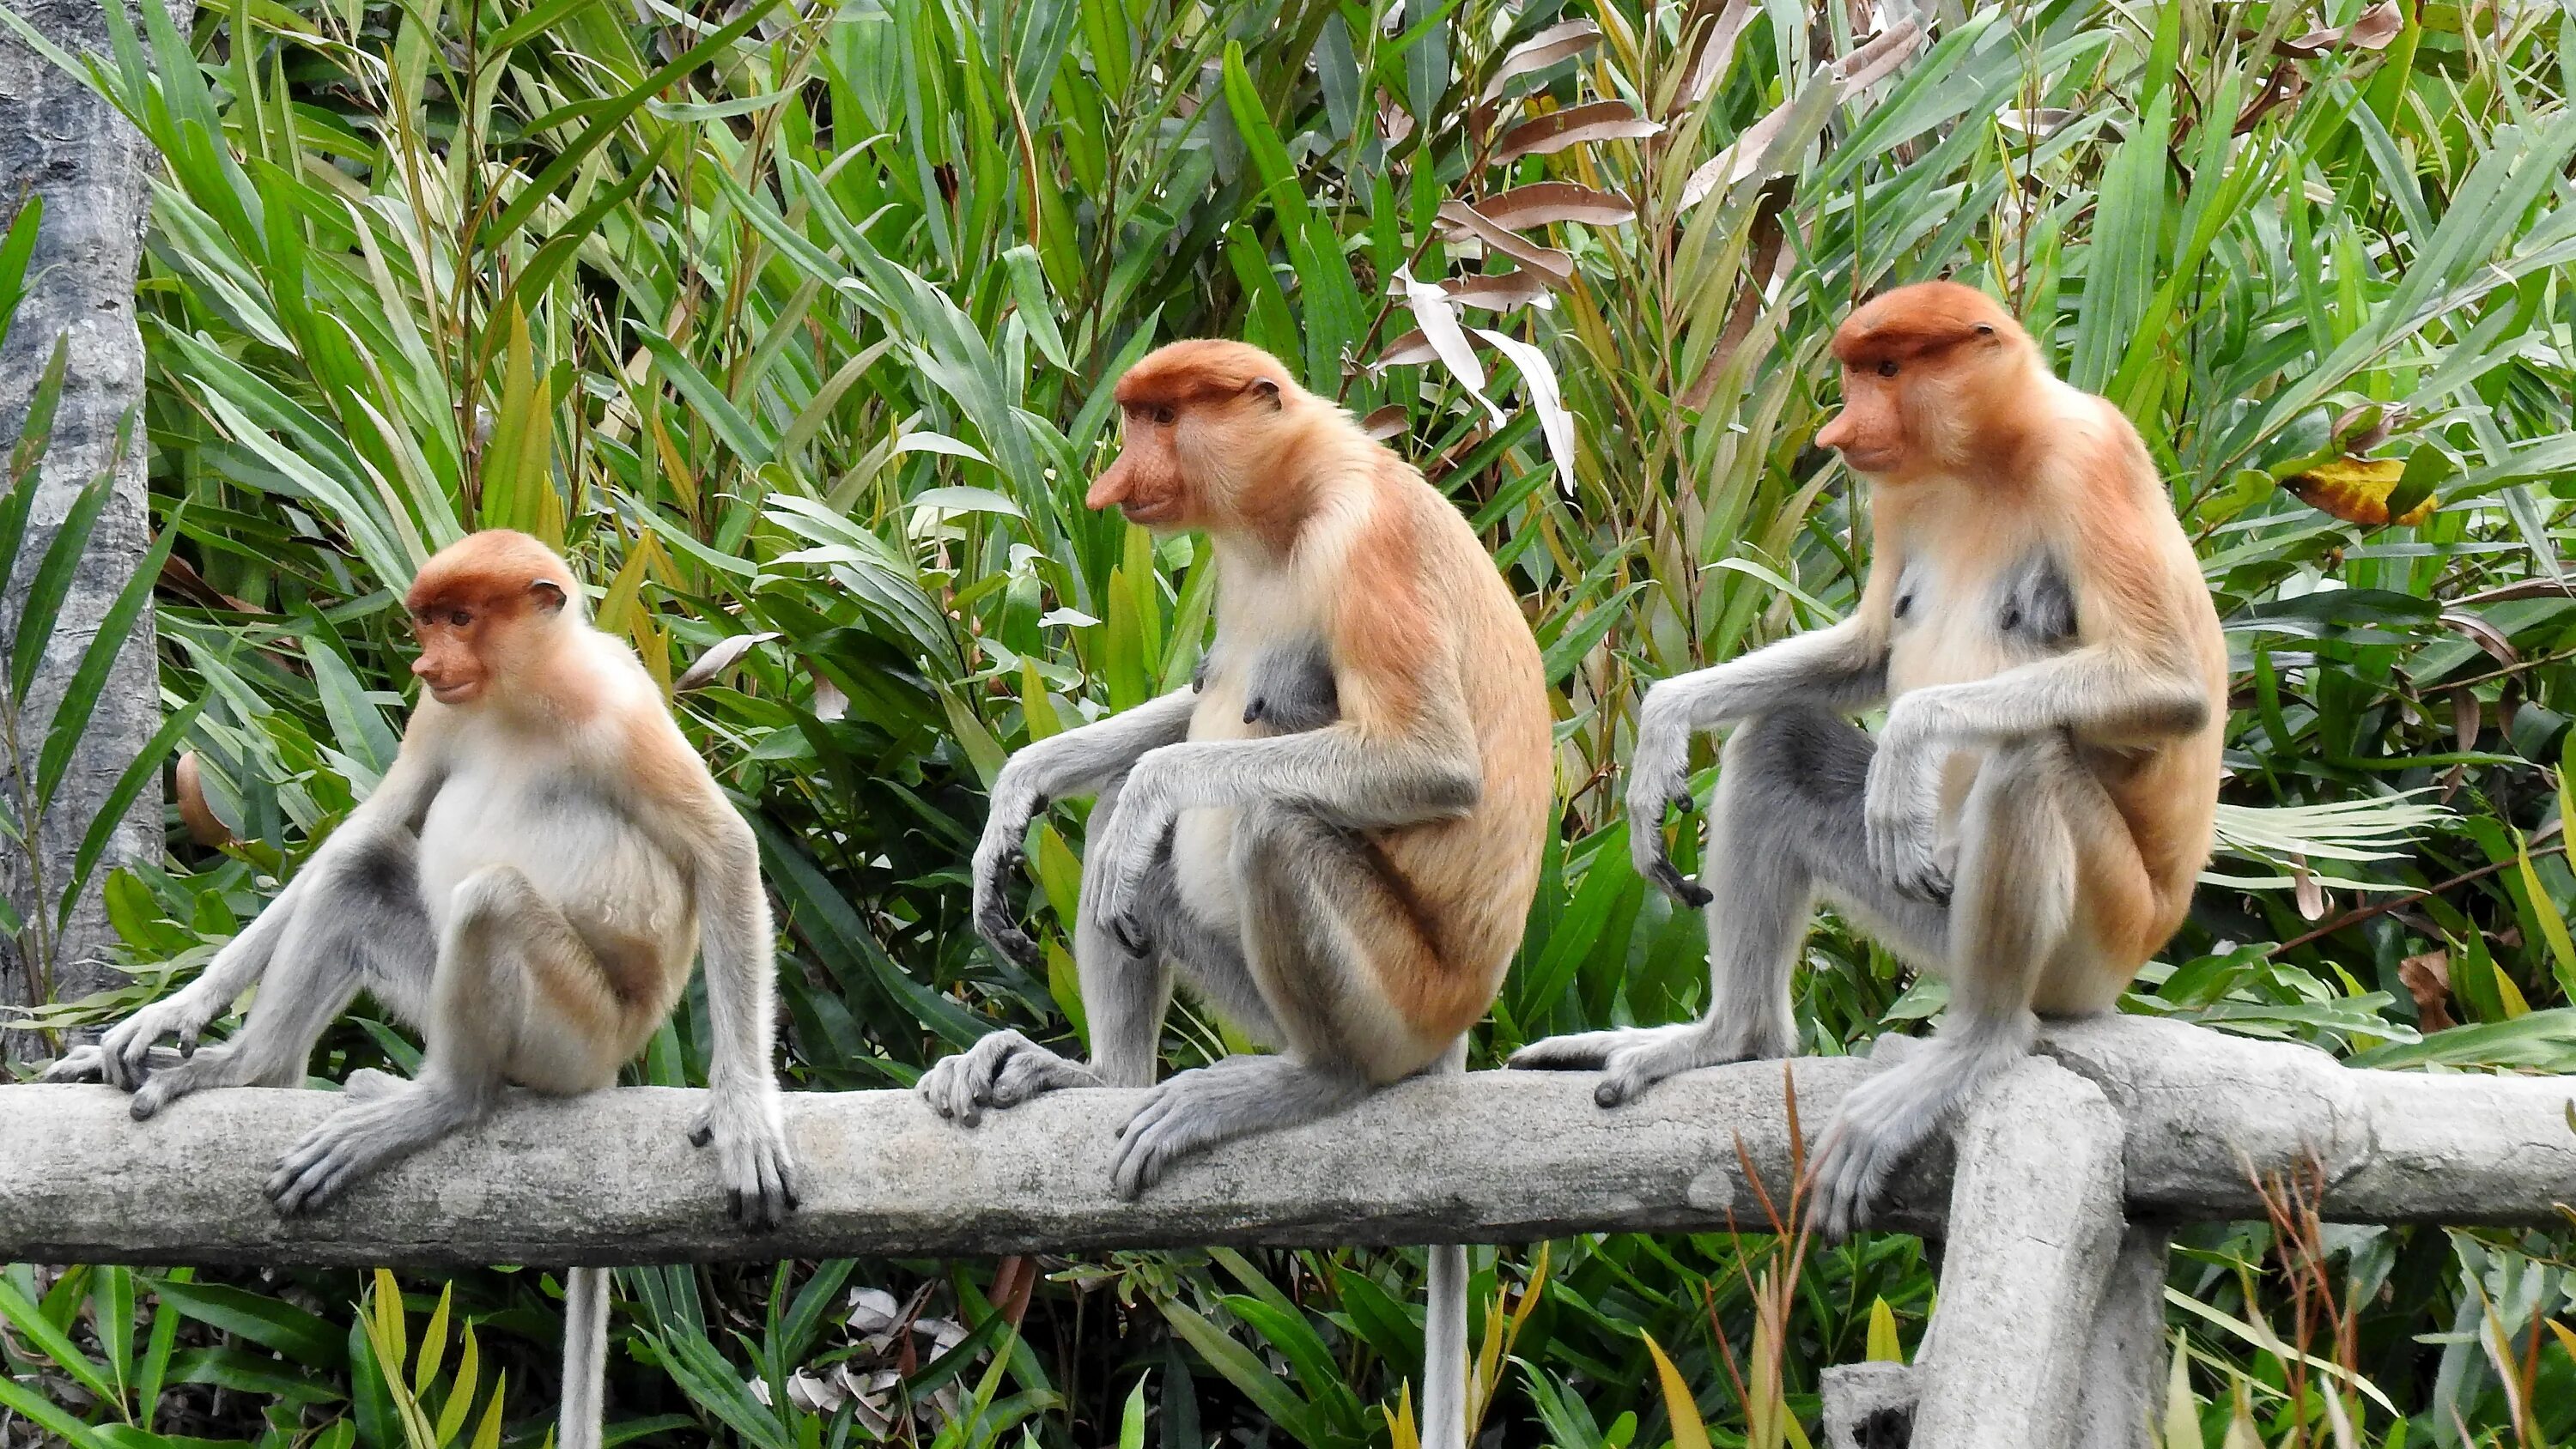 Обезьяна носач с острова Борнео. Обезьяна носач. Носач Борнео. Борнео, Сепилок, кахау. Jungle monkeys